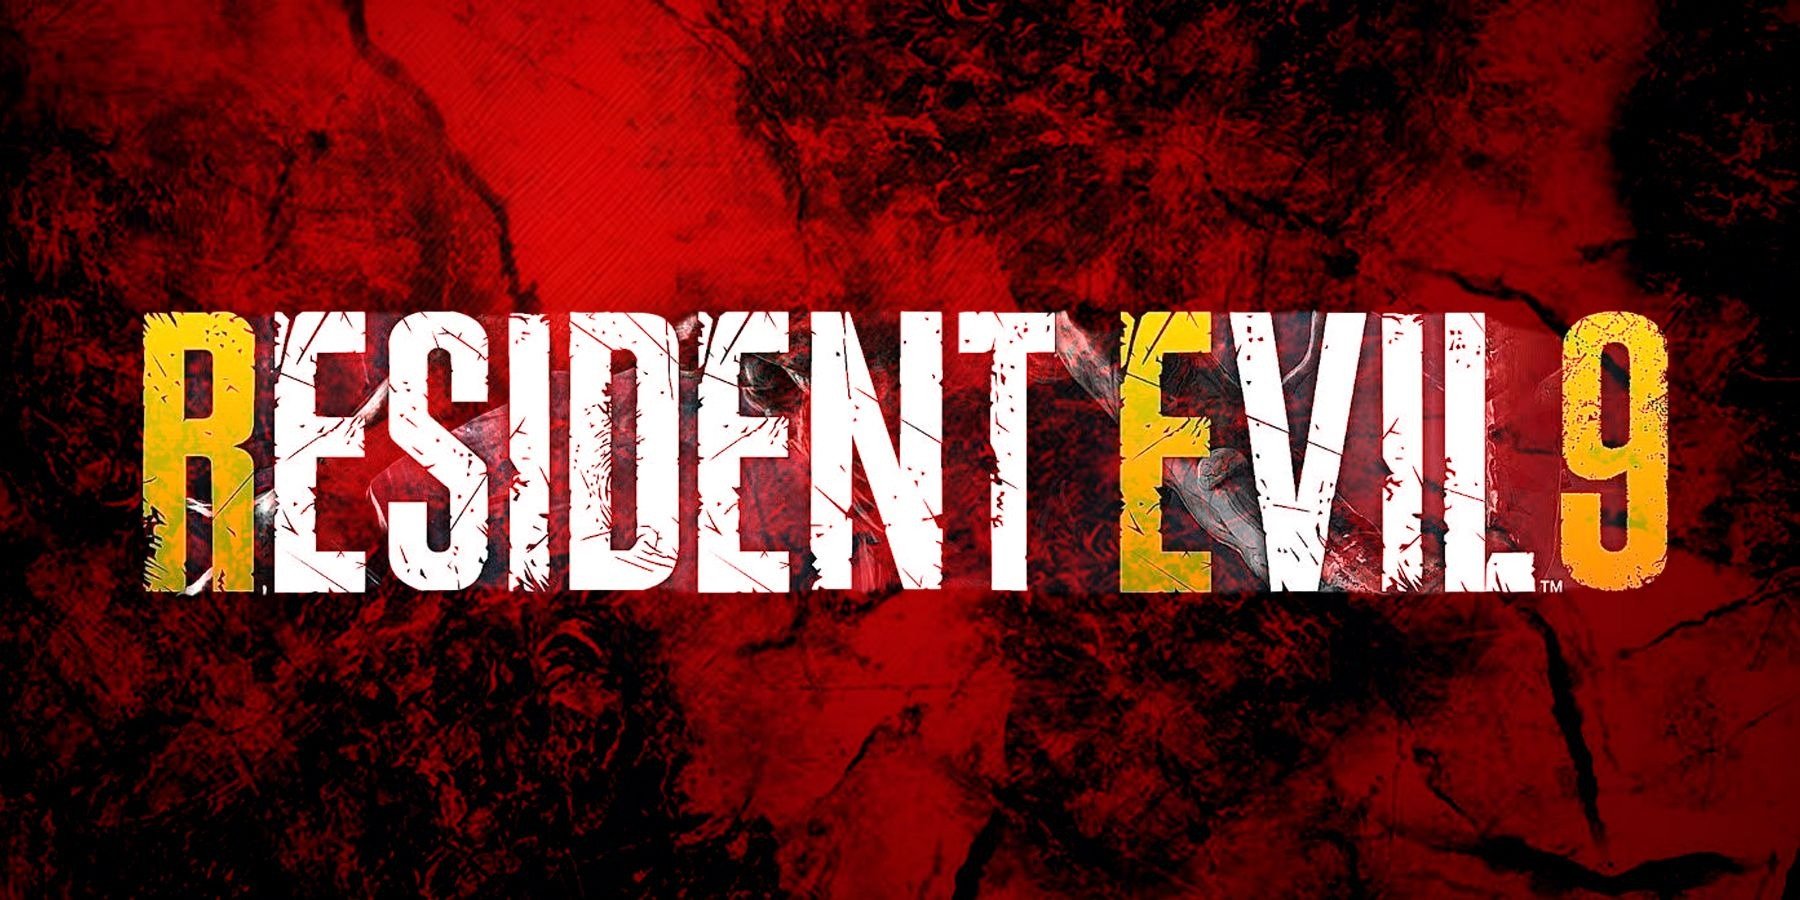 Resident Evil 9 Dường Như Đã Hé Lộ Bối Cảnh, Đưa Người Chơi Đến Vùng Biển Đông Nam Á